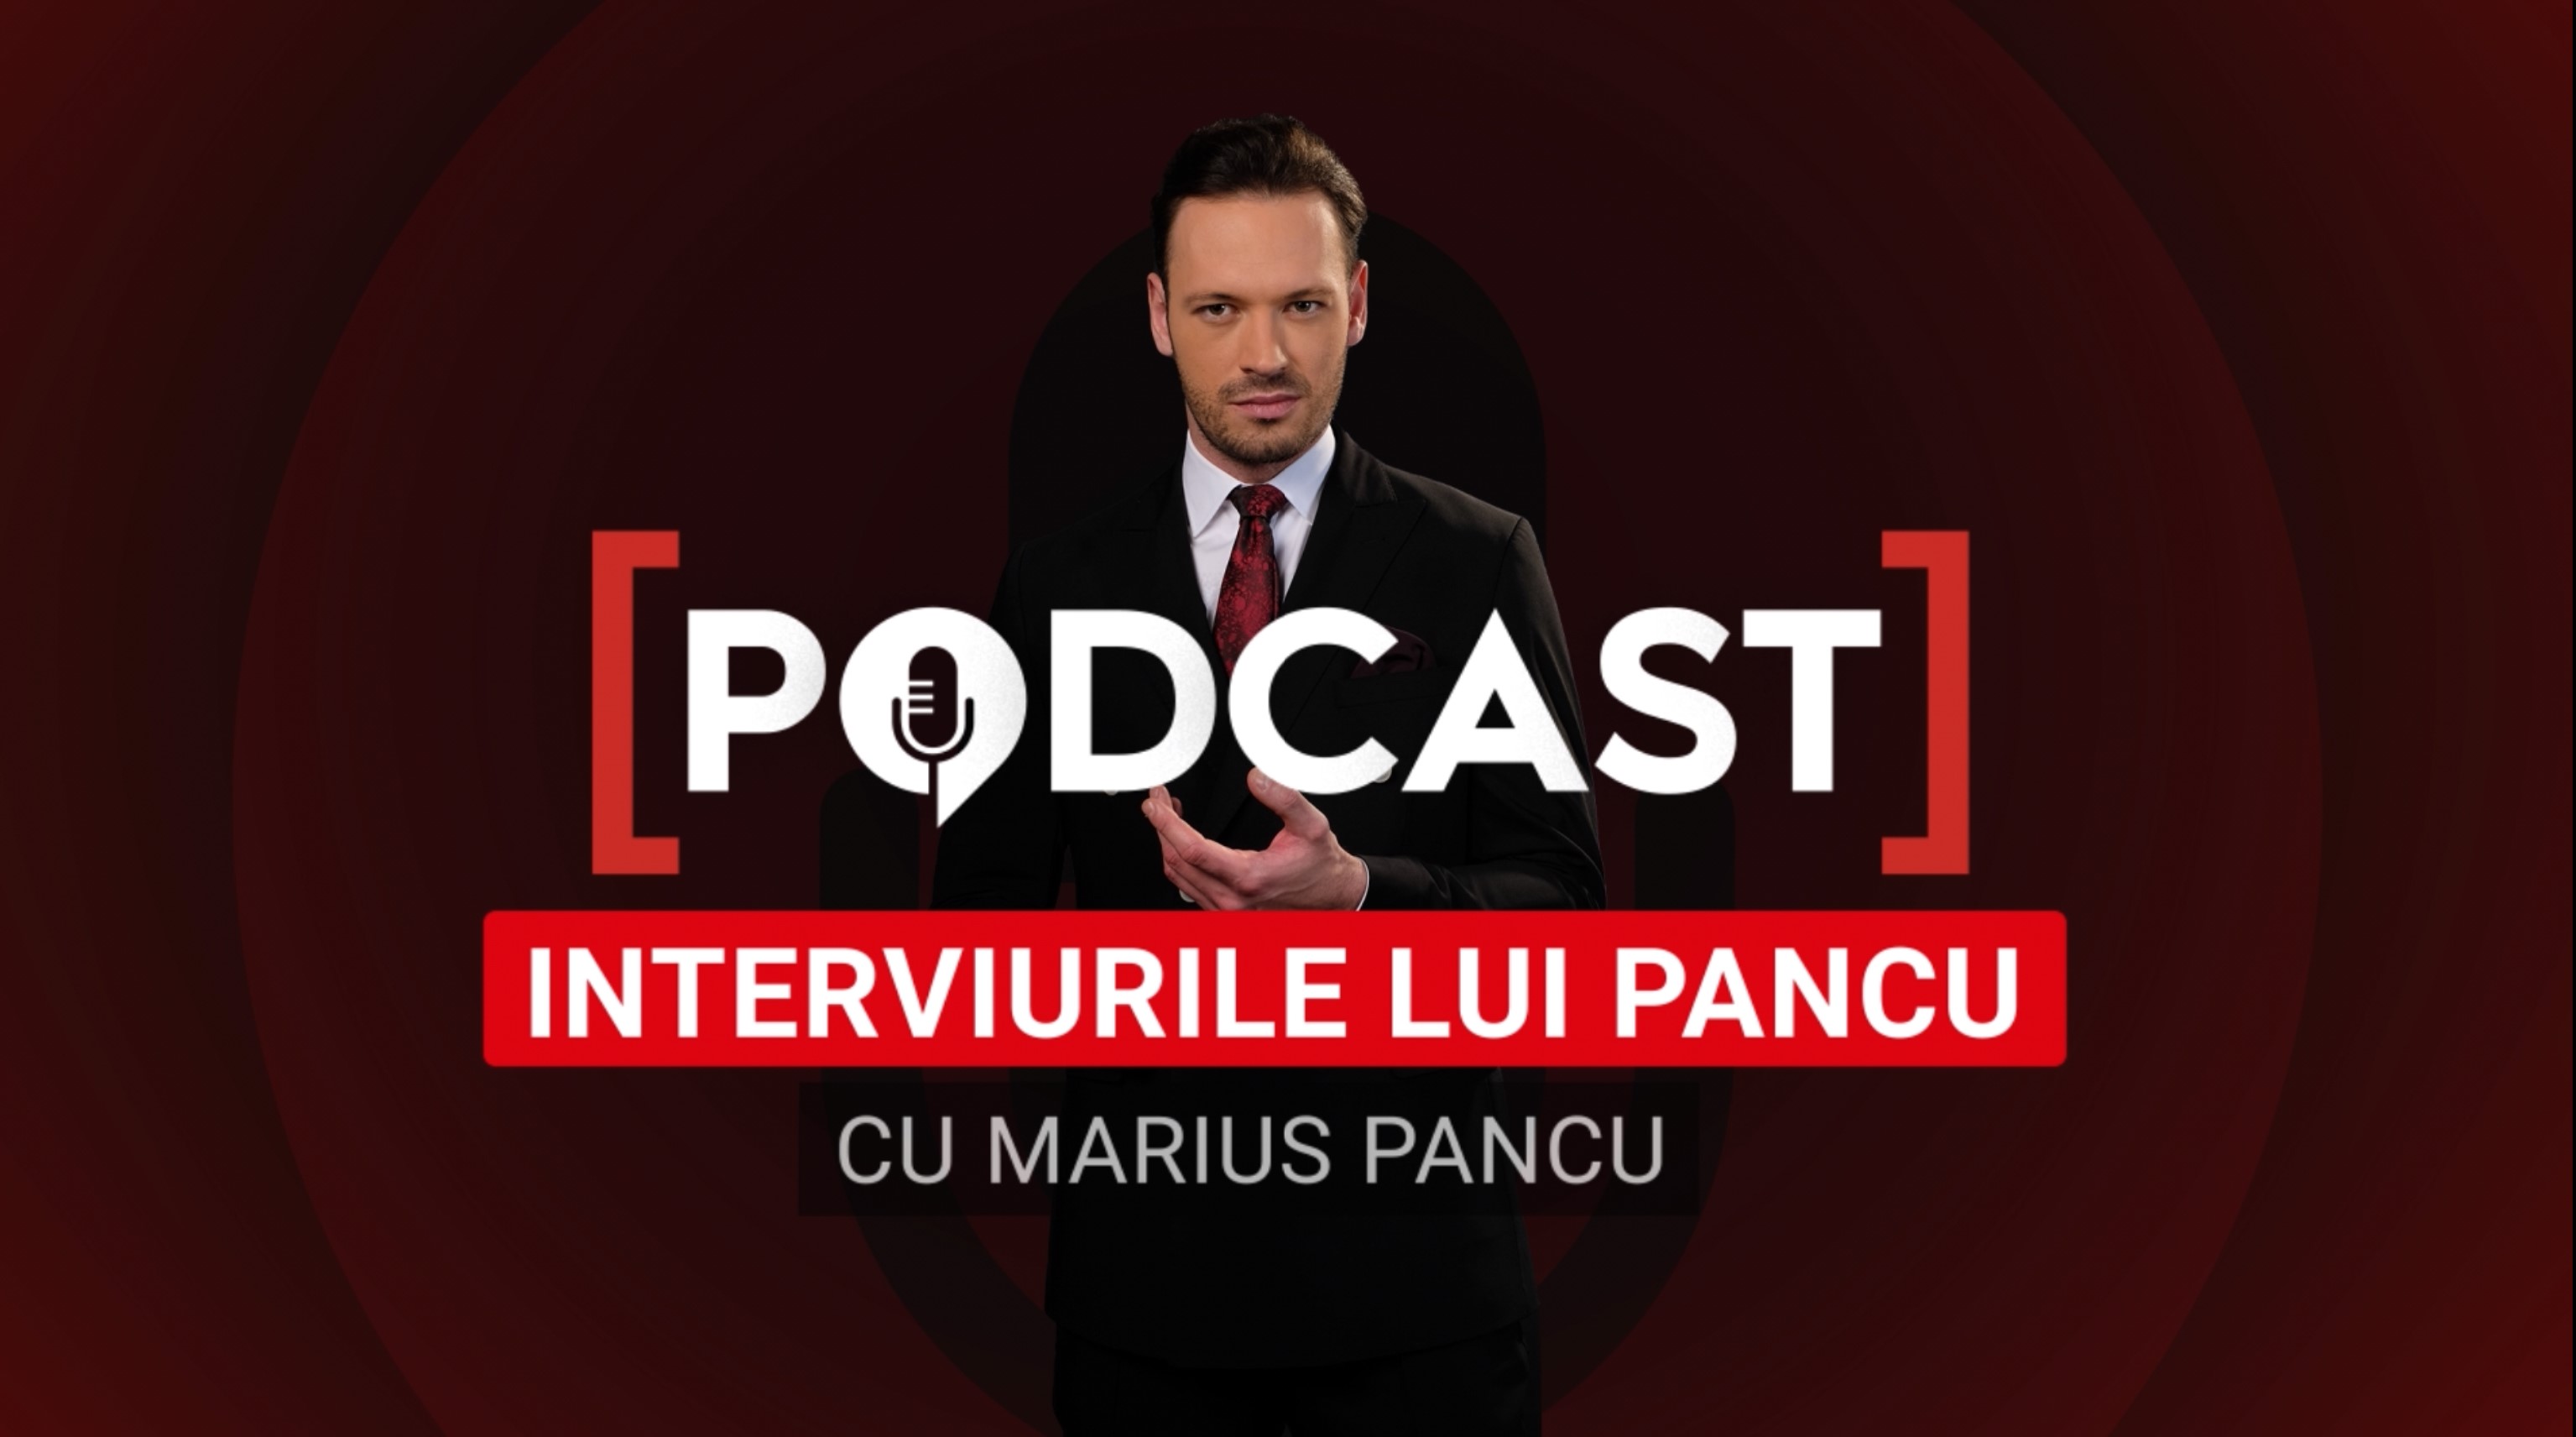 Interviurile lui Pancu